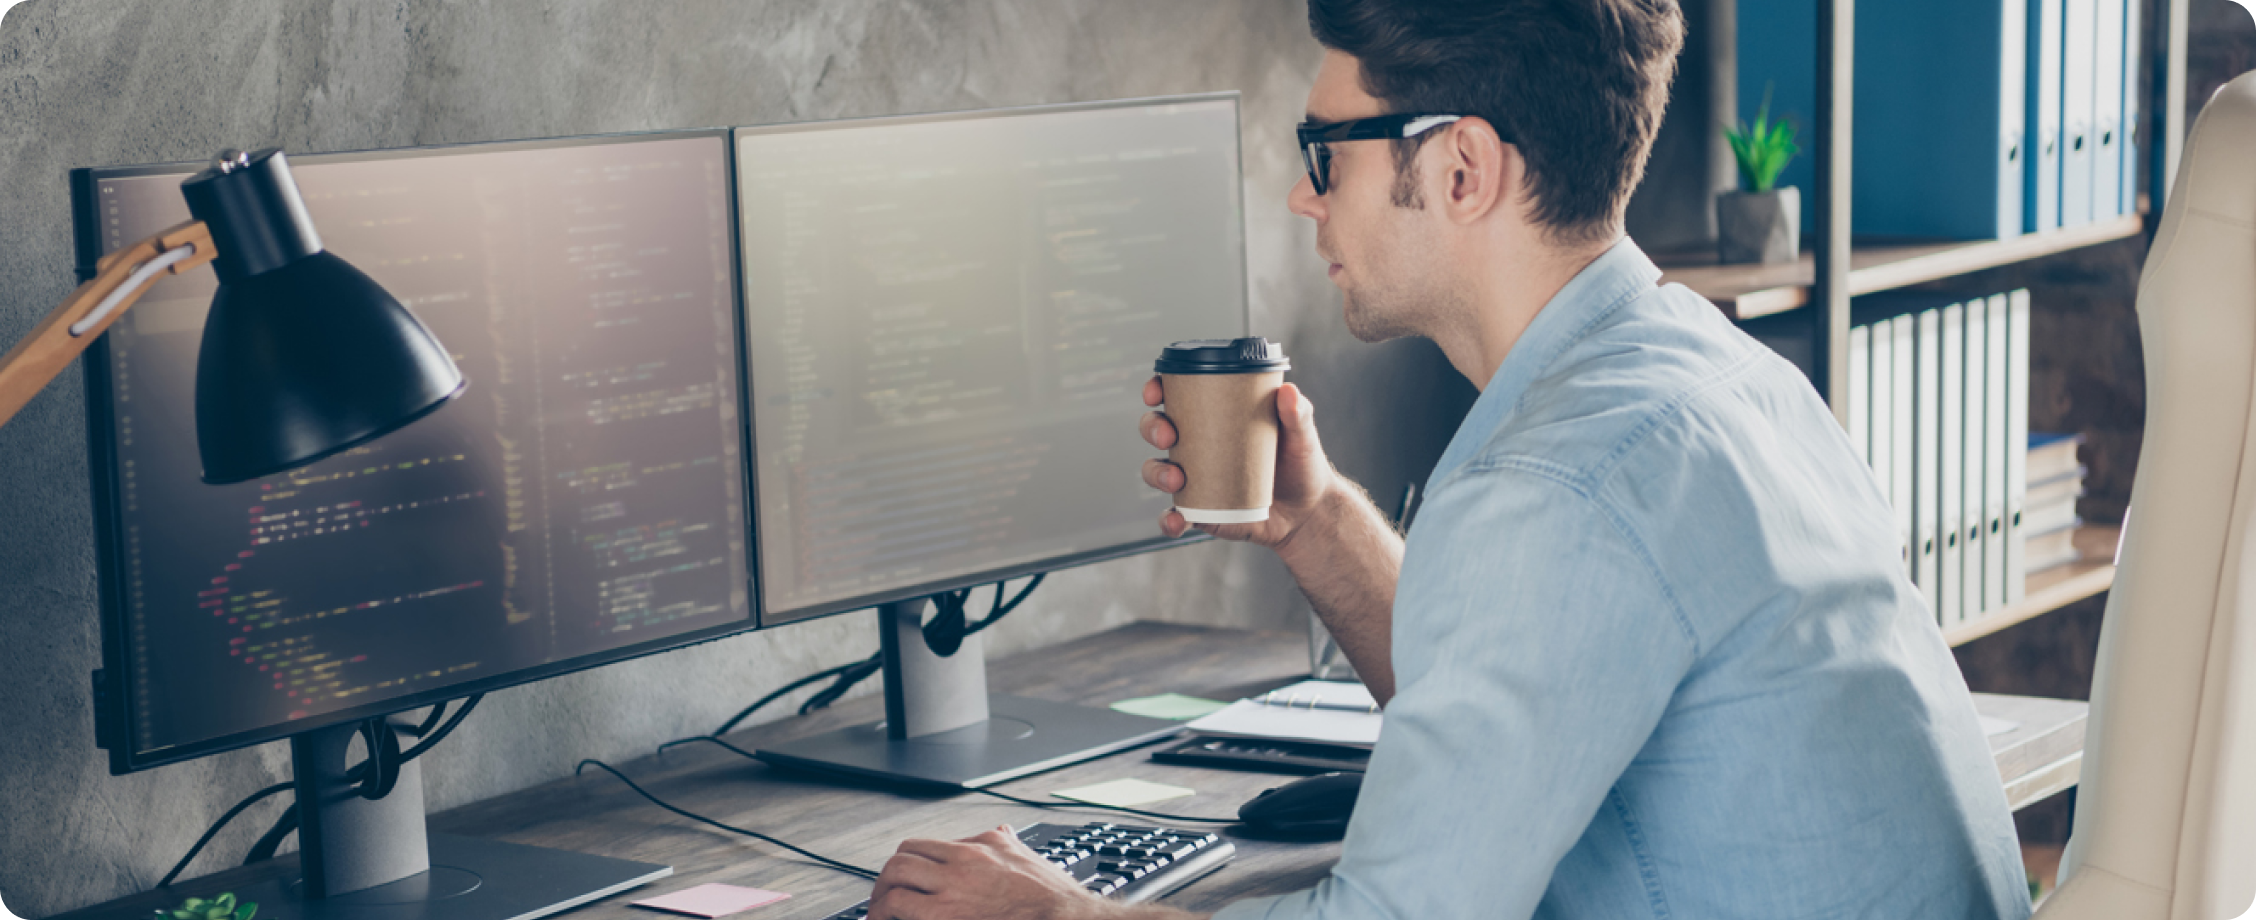 Мужчина в синей рубашке держит кофе в бумажном стаканчике, работая за настольным компьютером.